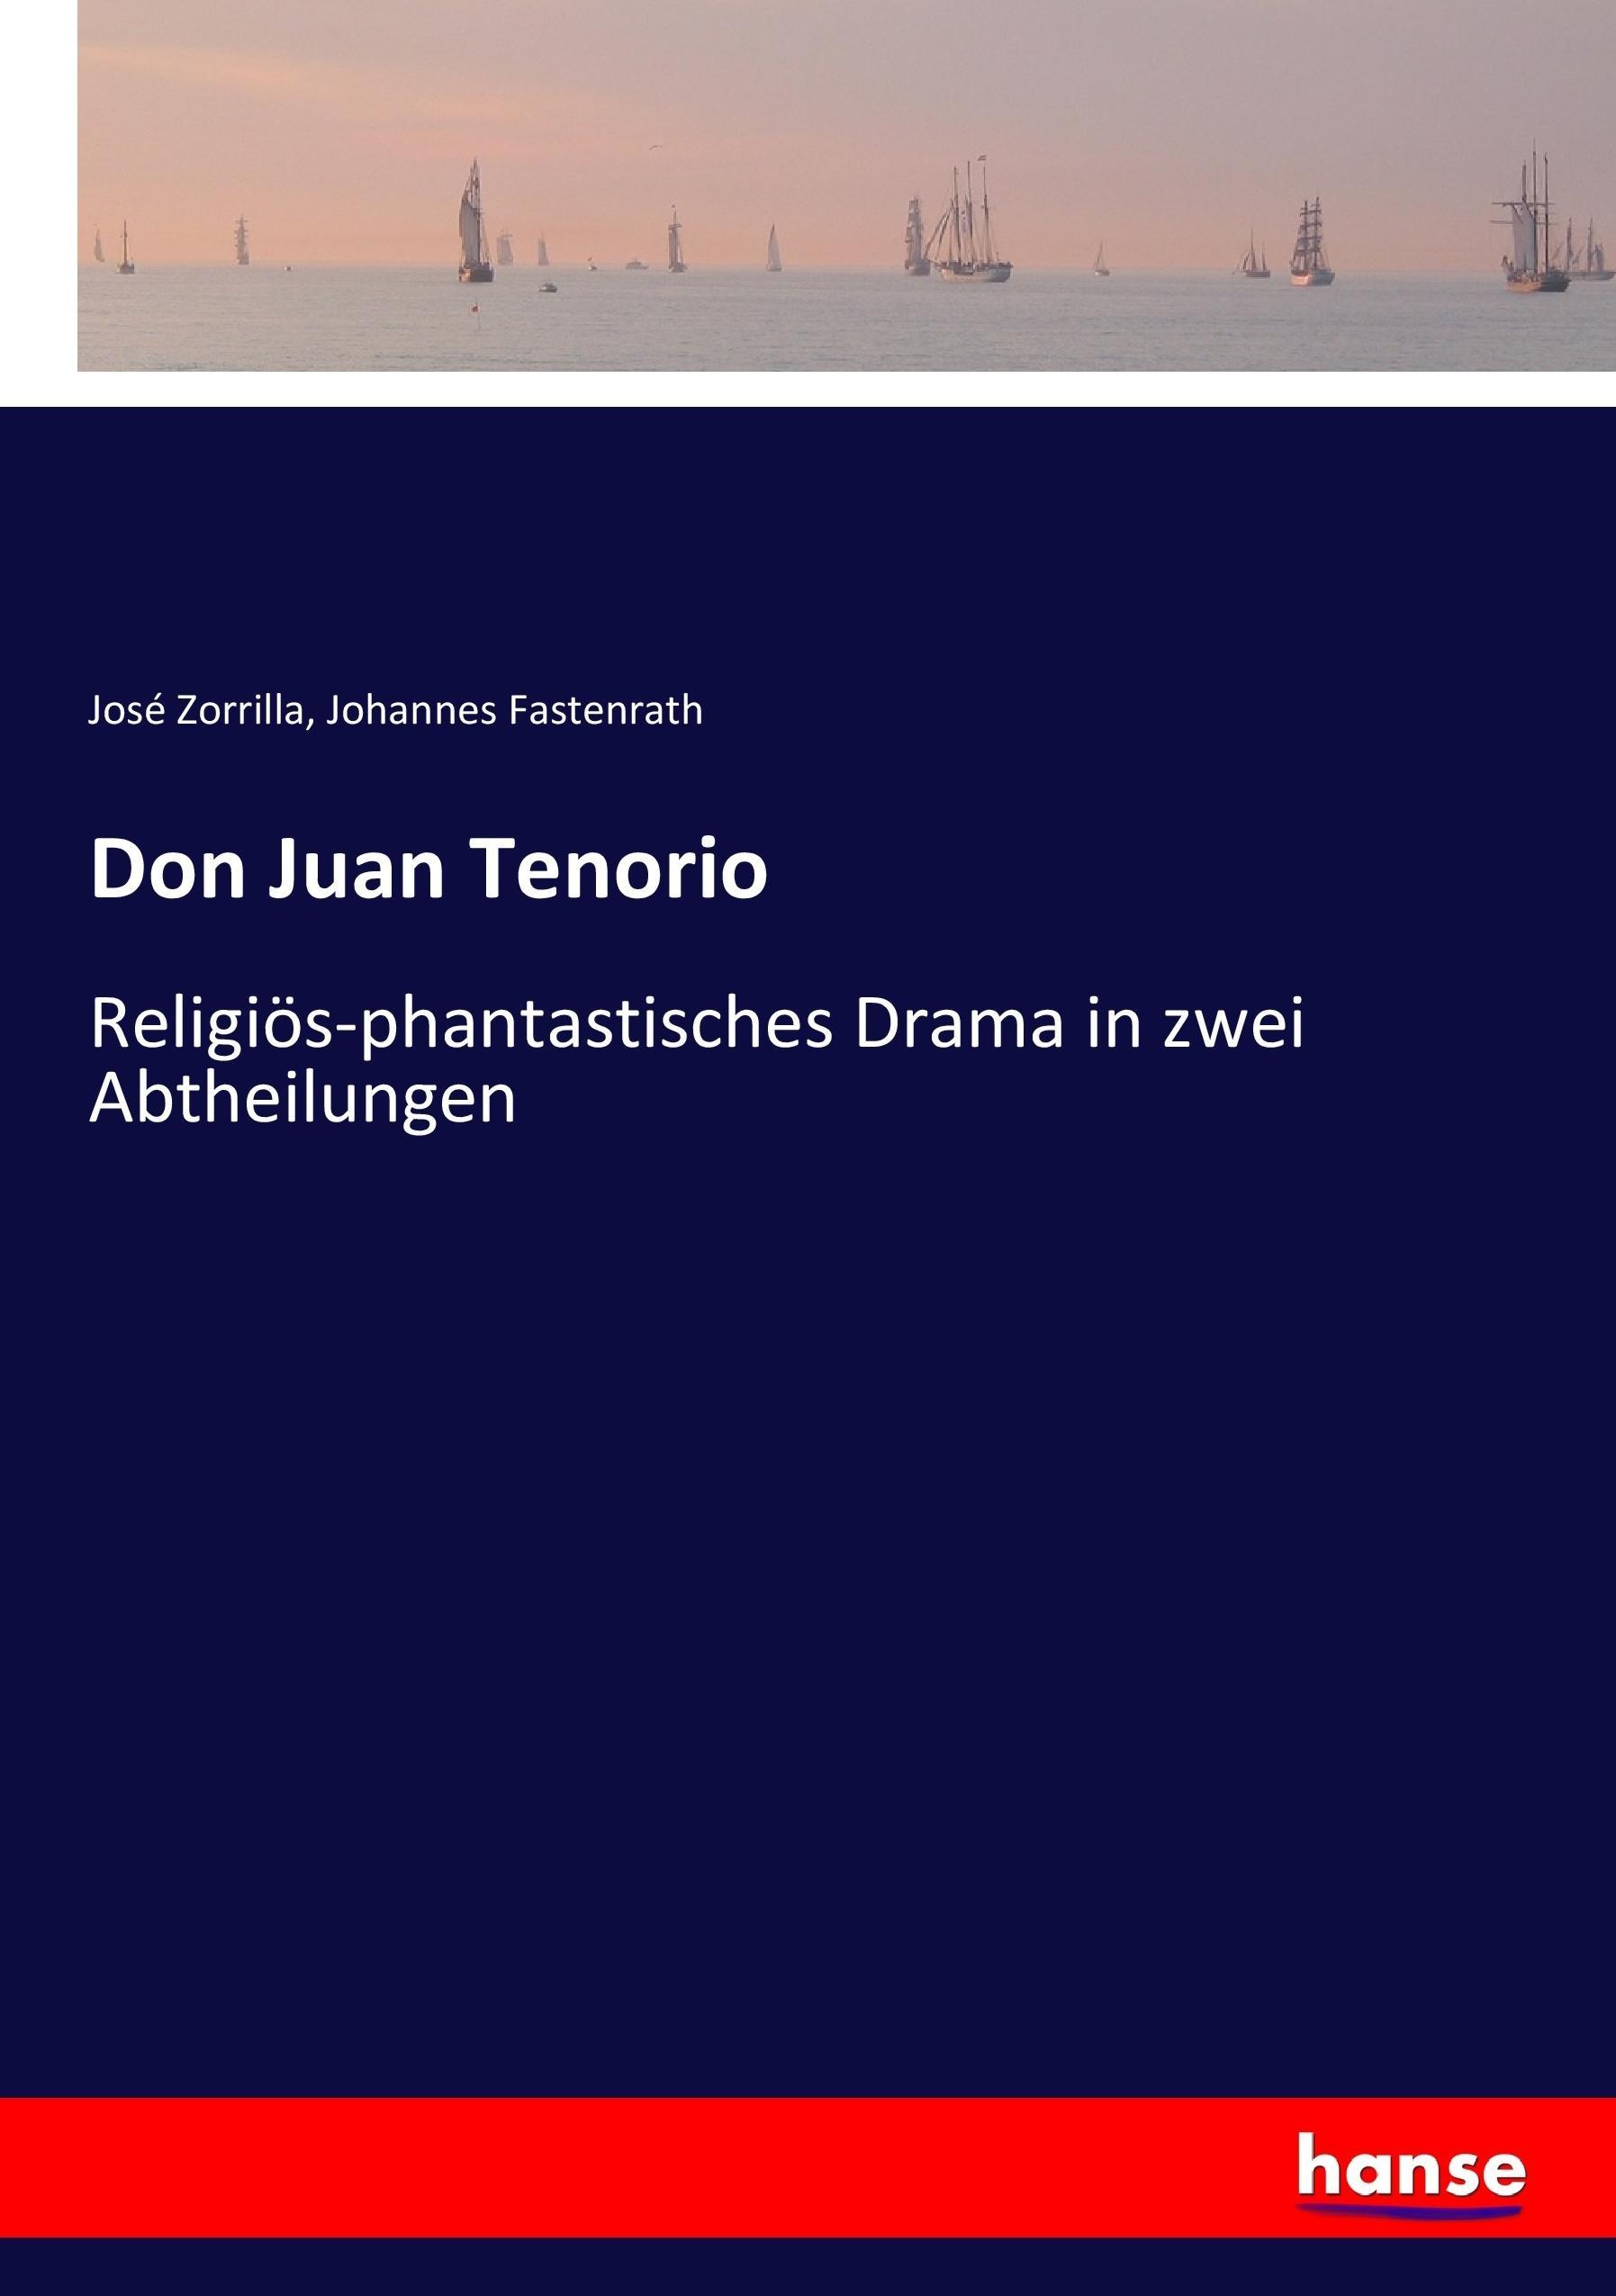 Don Juan Tenorio - Zorrilla, José Fastenrath, Johannes